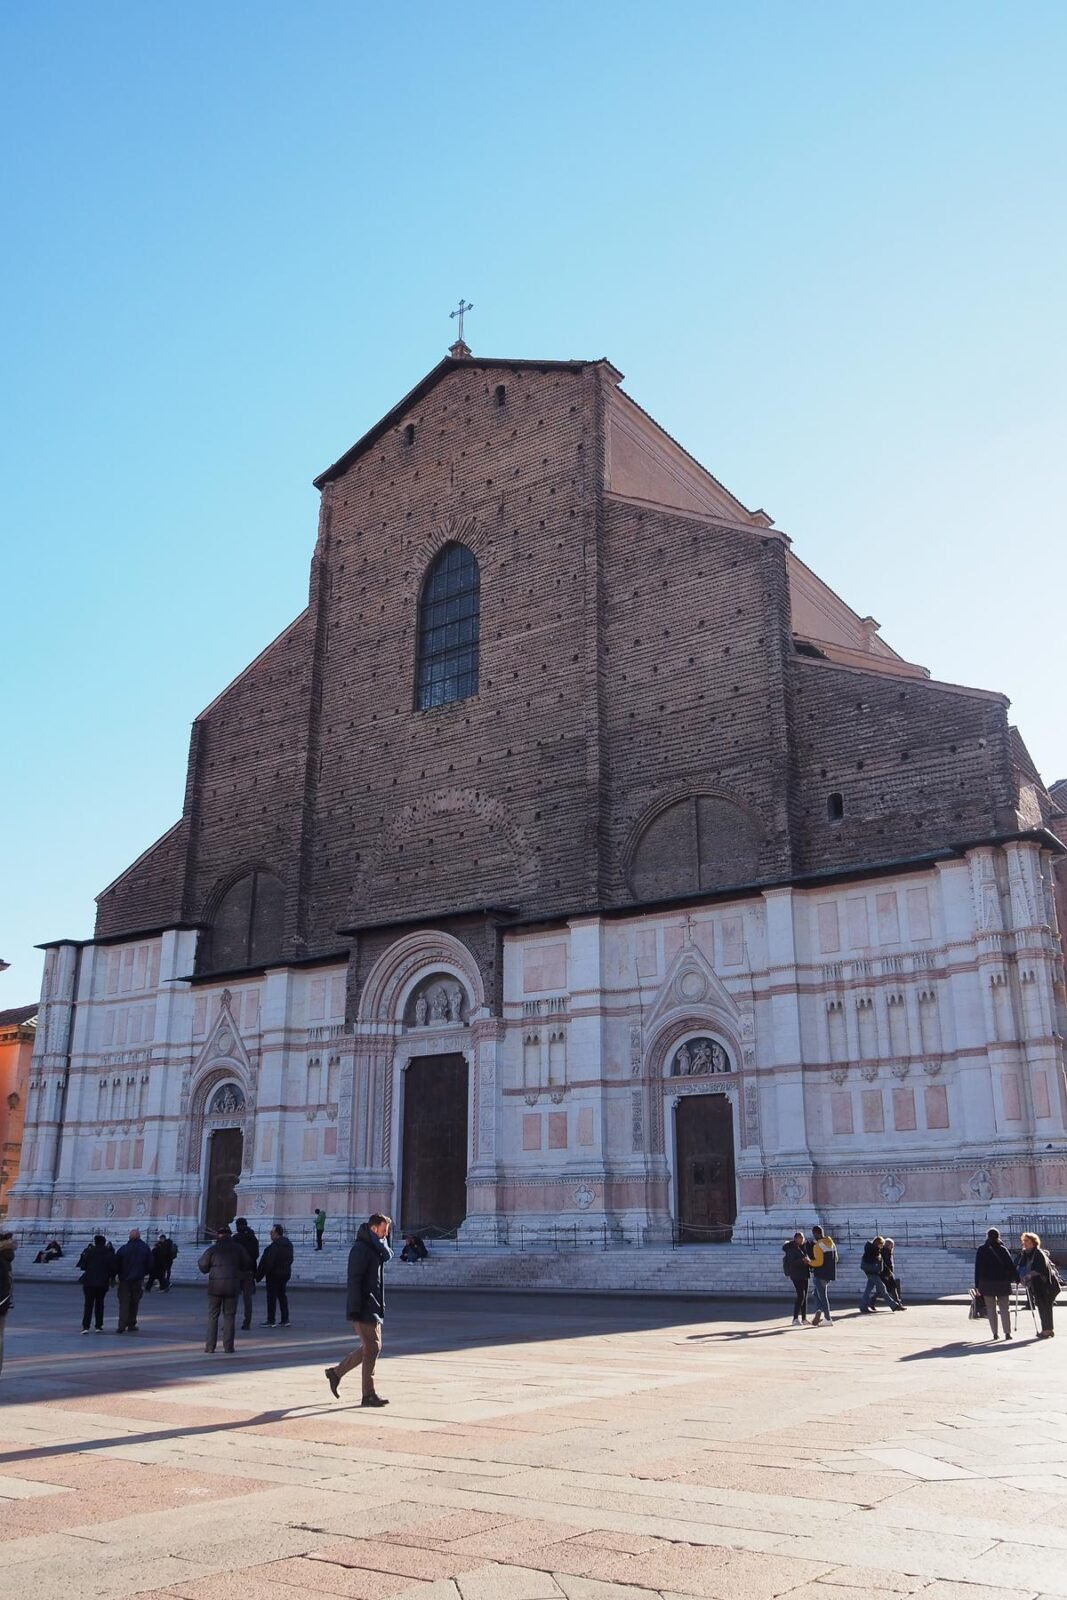 Sunny Basilica San Petronio and Piazza Maggiore in Bologna with visitors